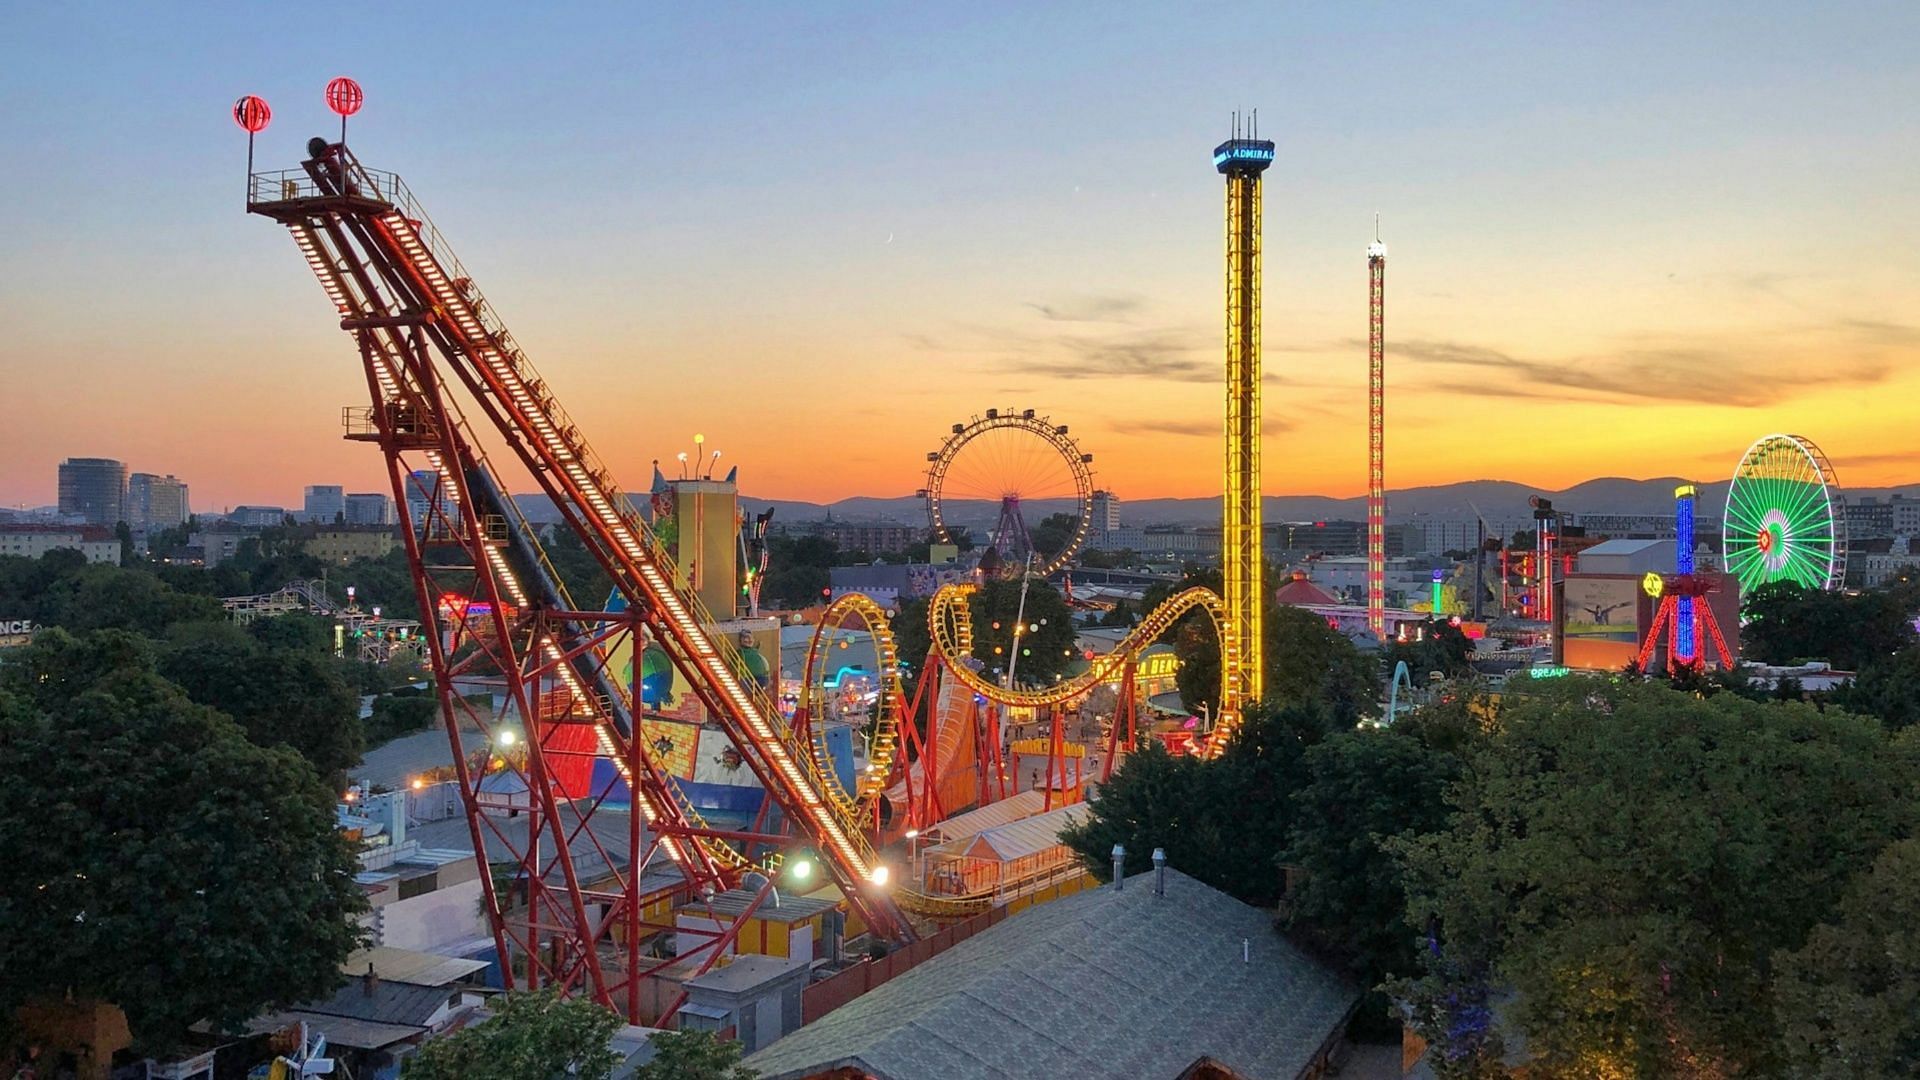 A representative image of an amusement park. (Image via Unsplash)